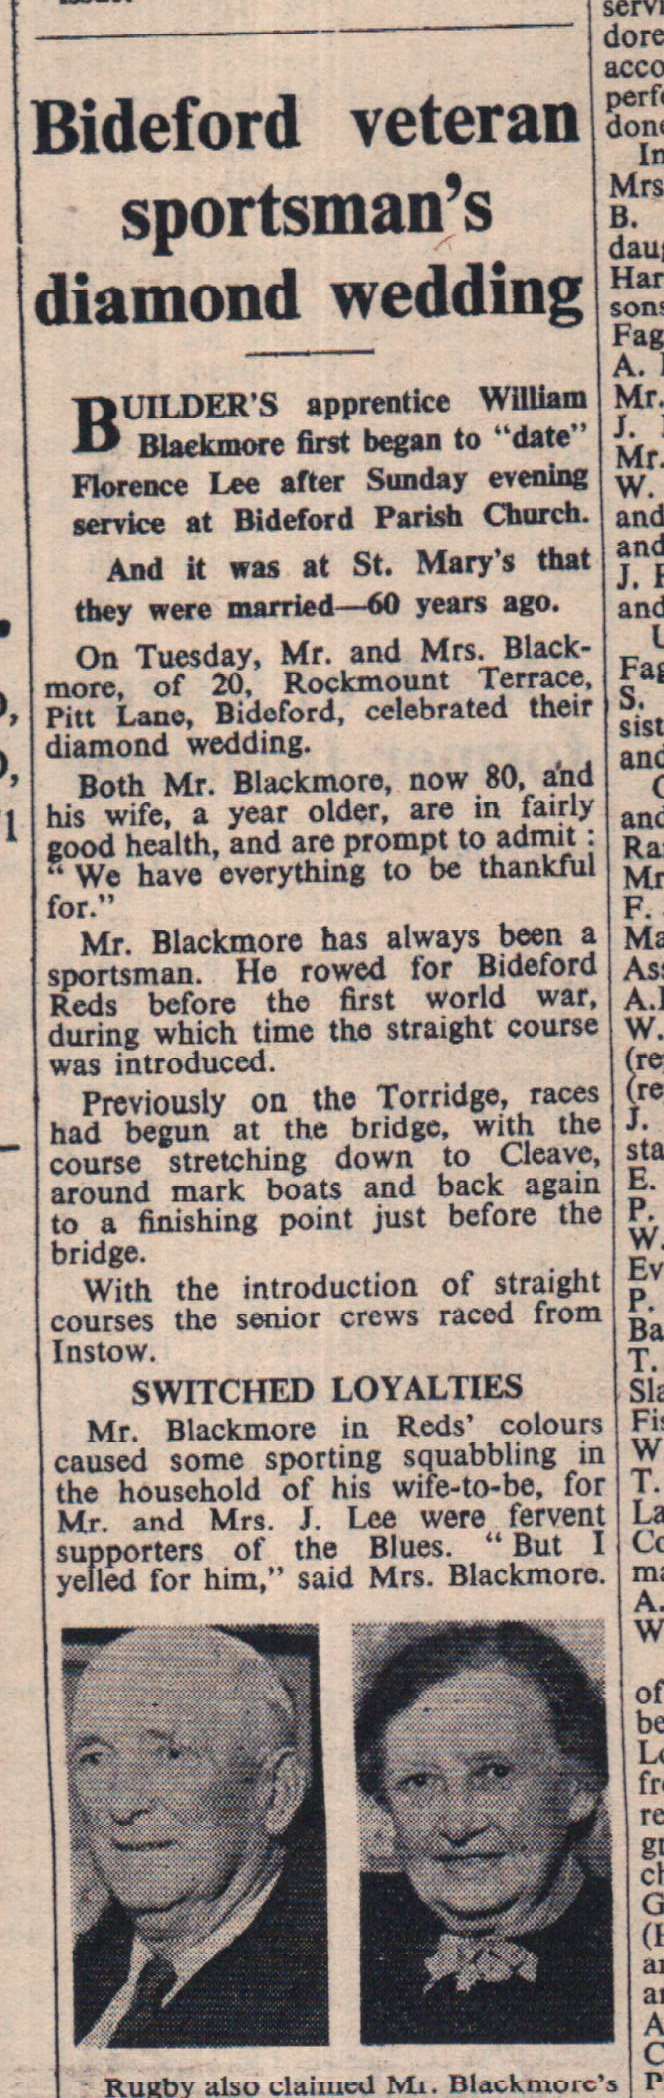 15.10.1965 Blackmore diamond wedding